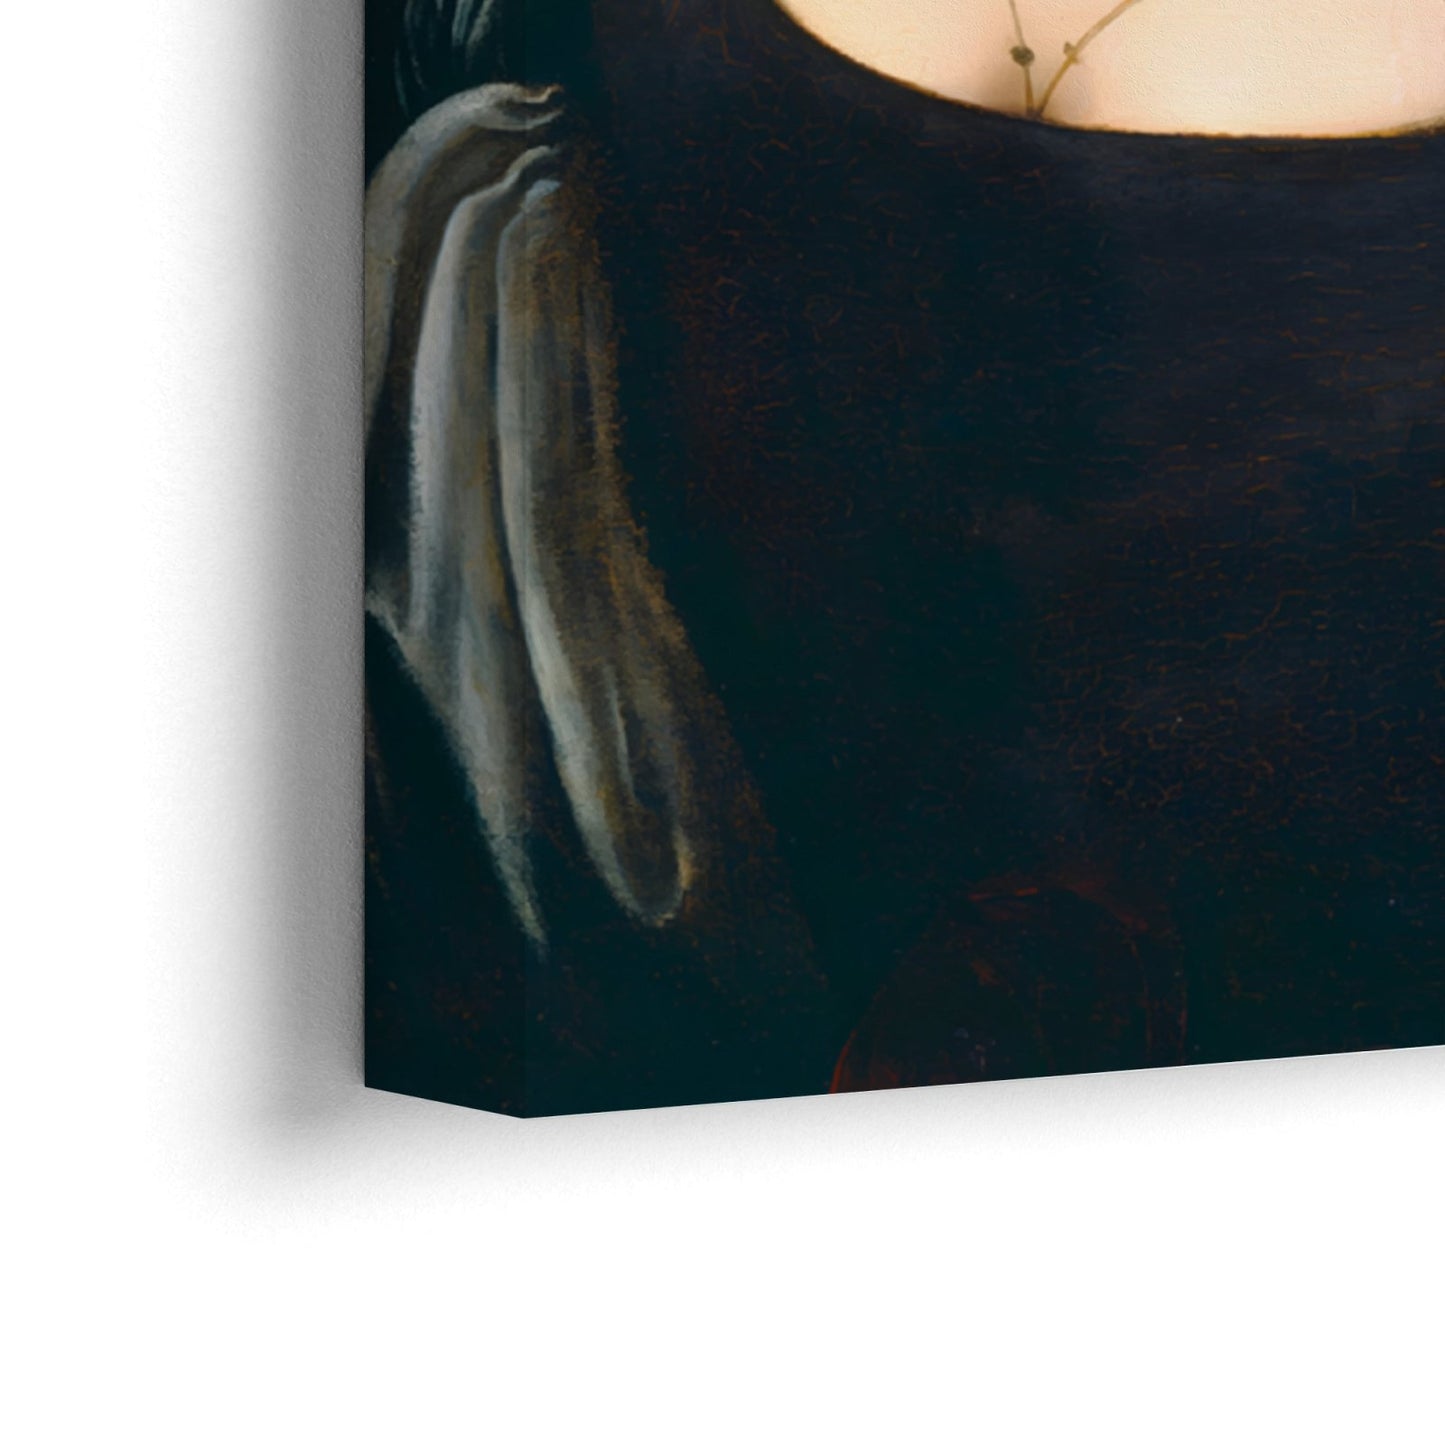 Egy fiatal nő, Leonardo Da Vinci portréja